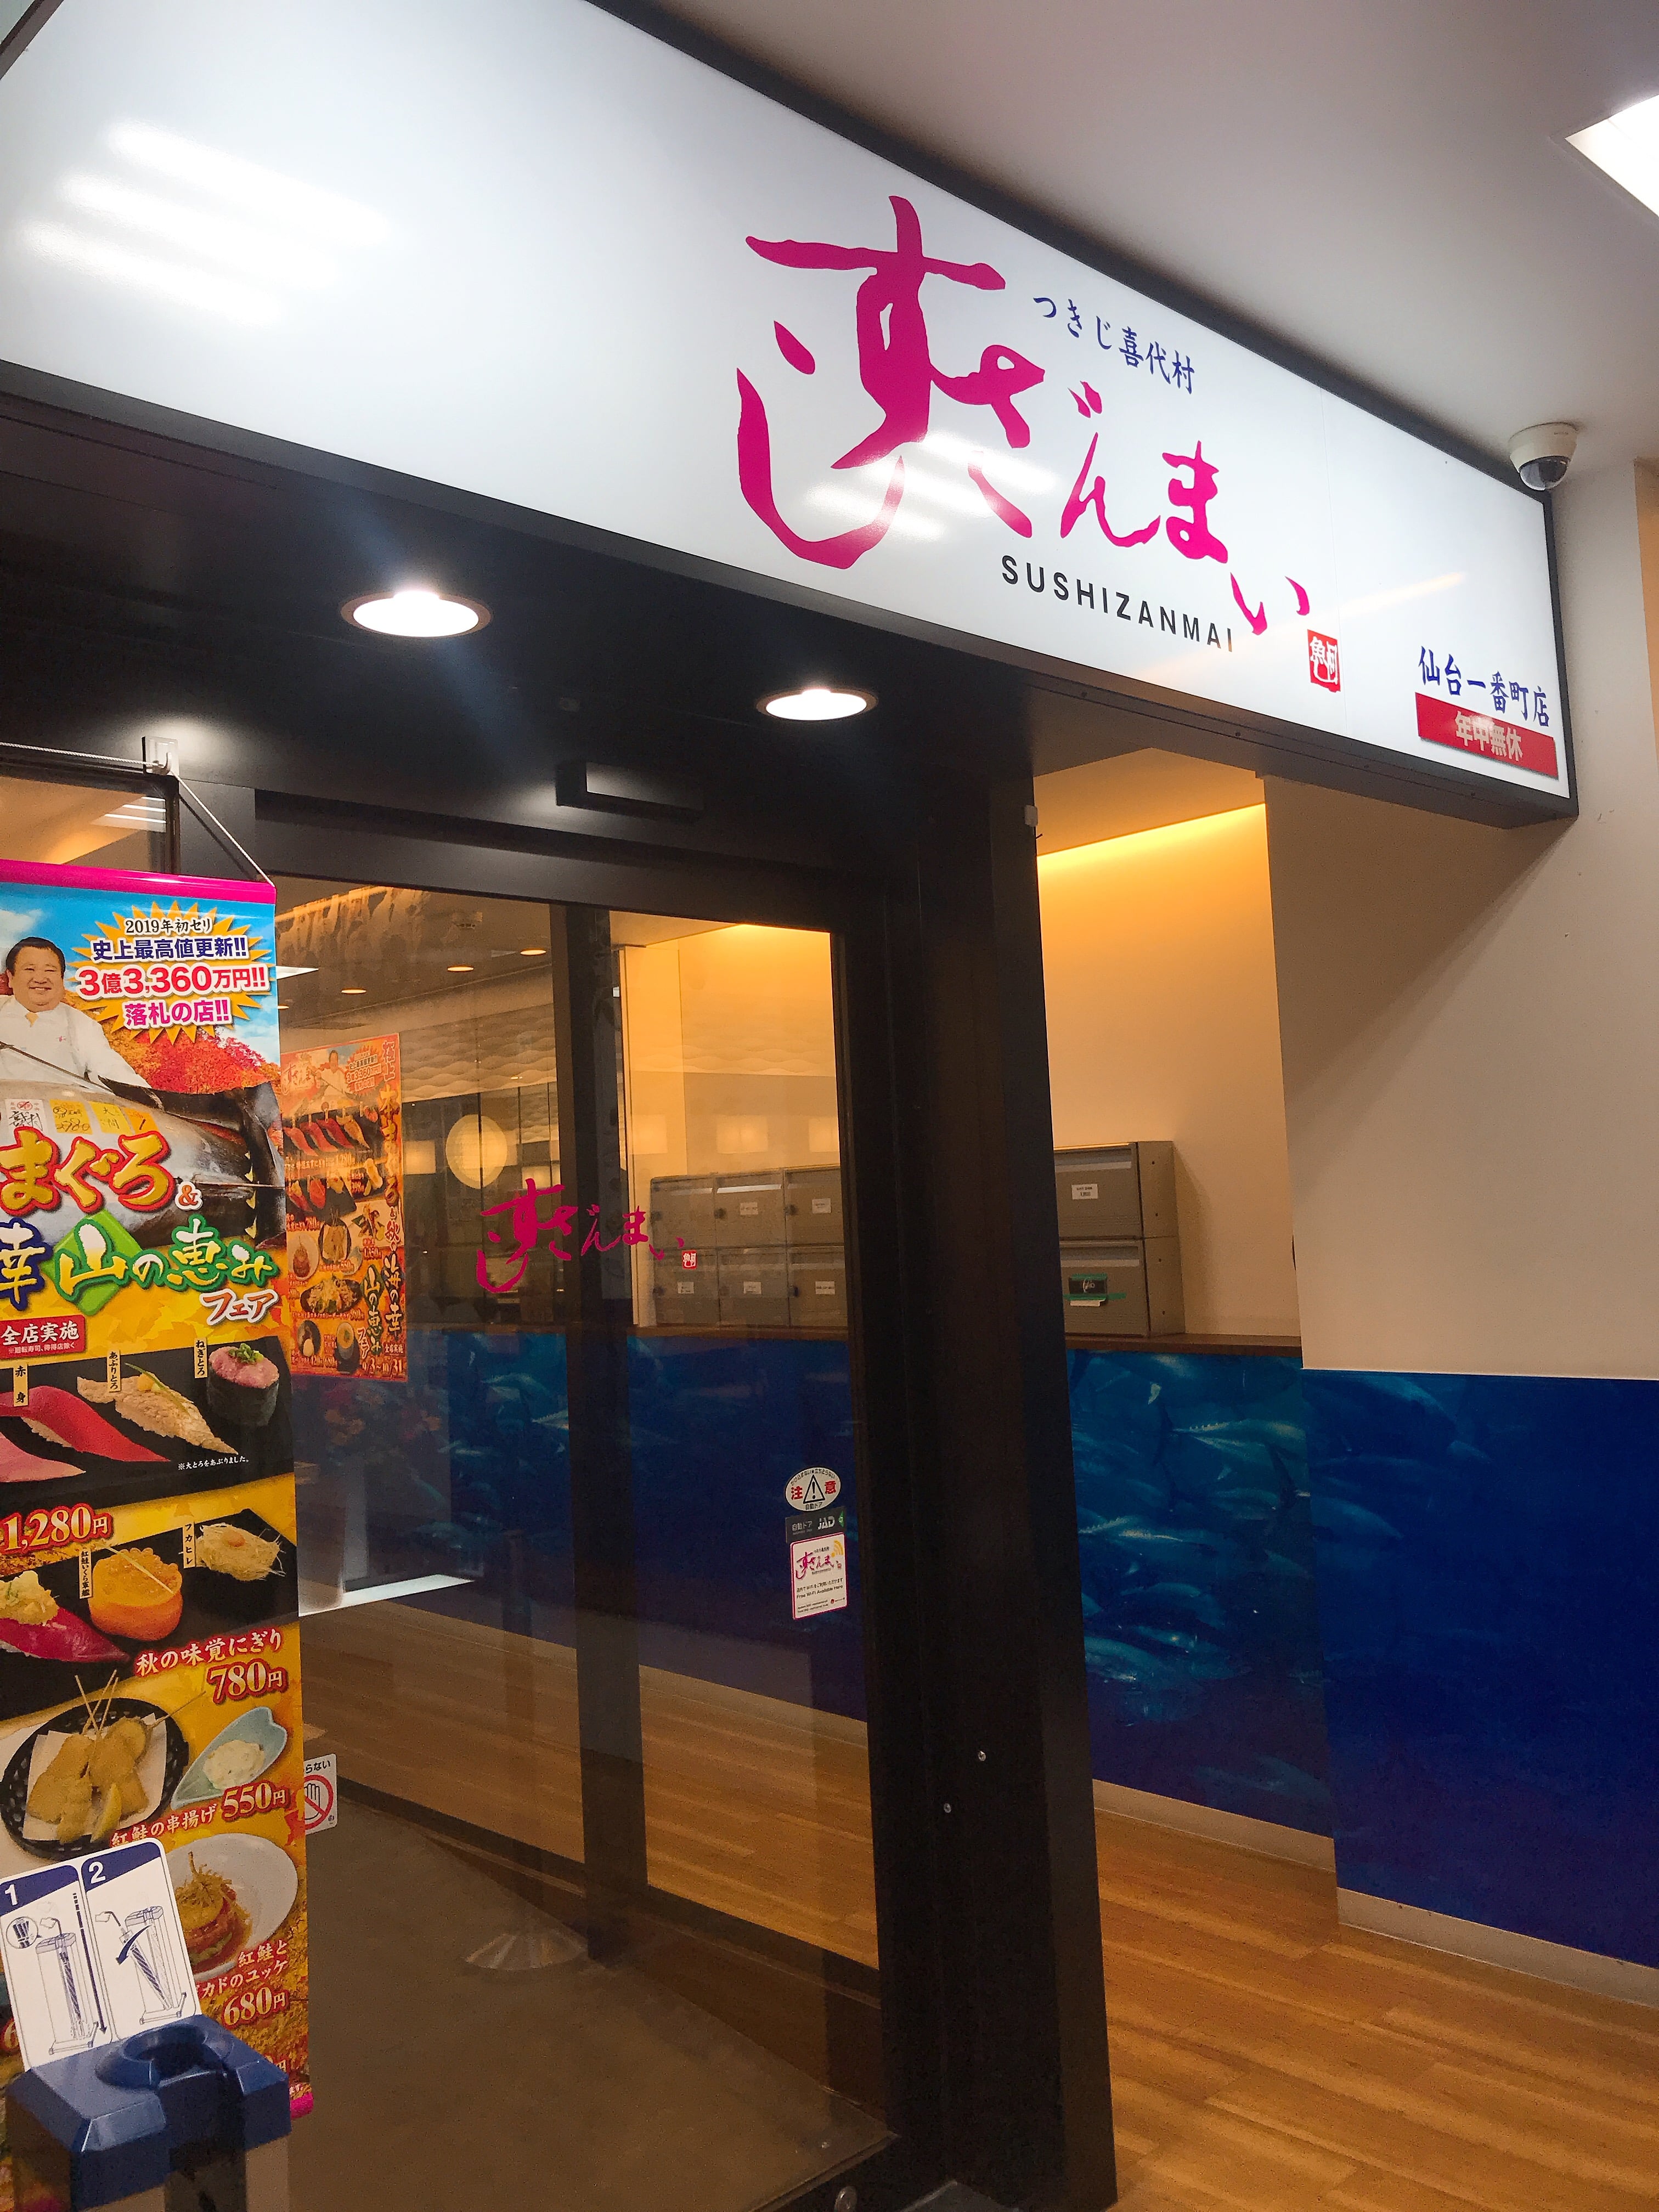 あの有名チェーン店「すしざんまい」が宮城県仙台市にオープン！あの有名な社長が店の前でお出迎え！？自慢のマグロを堪能してきました♫